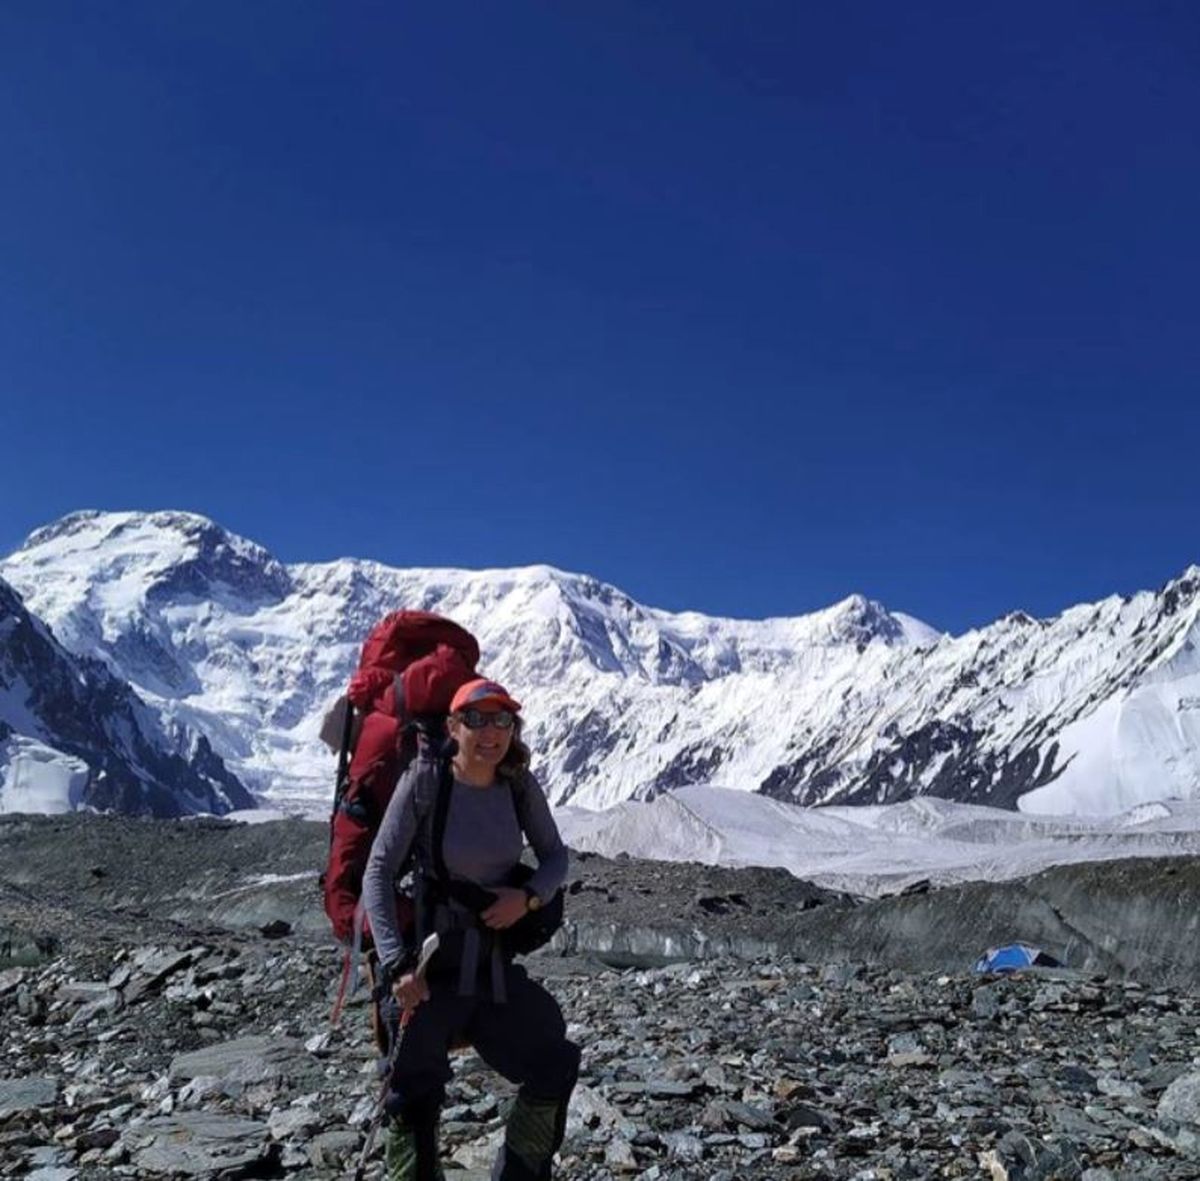 الکسیس استون کوهنورد ایرانی-بریتانیایی که از اعضای گروه کوهنوردی آرش نیز هست، در یک پست اینستاگرامی جزییاتی از مرگ مهری جعفری ، کوهنورد ایرانی، را منتشر کرده است.